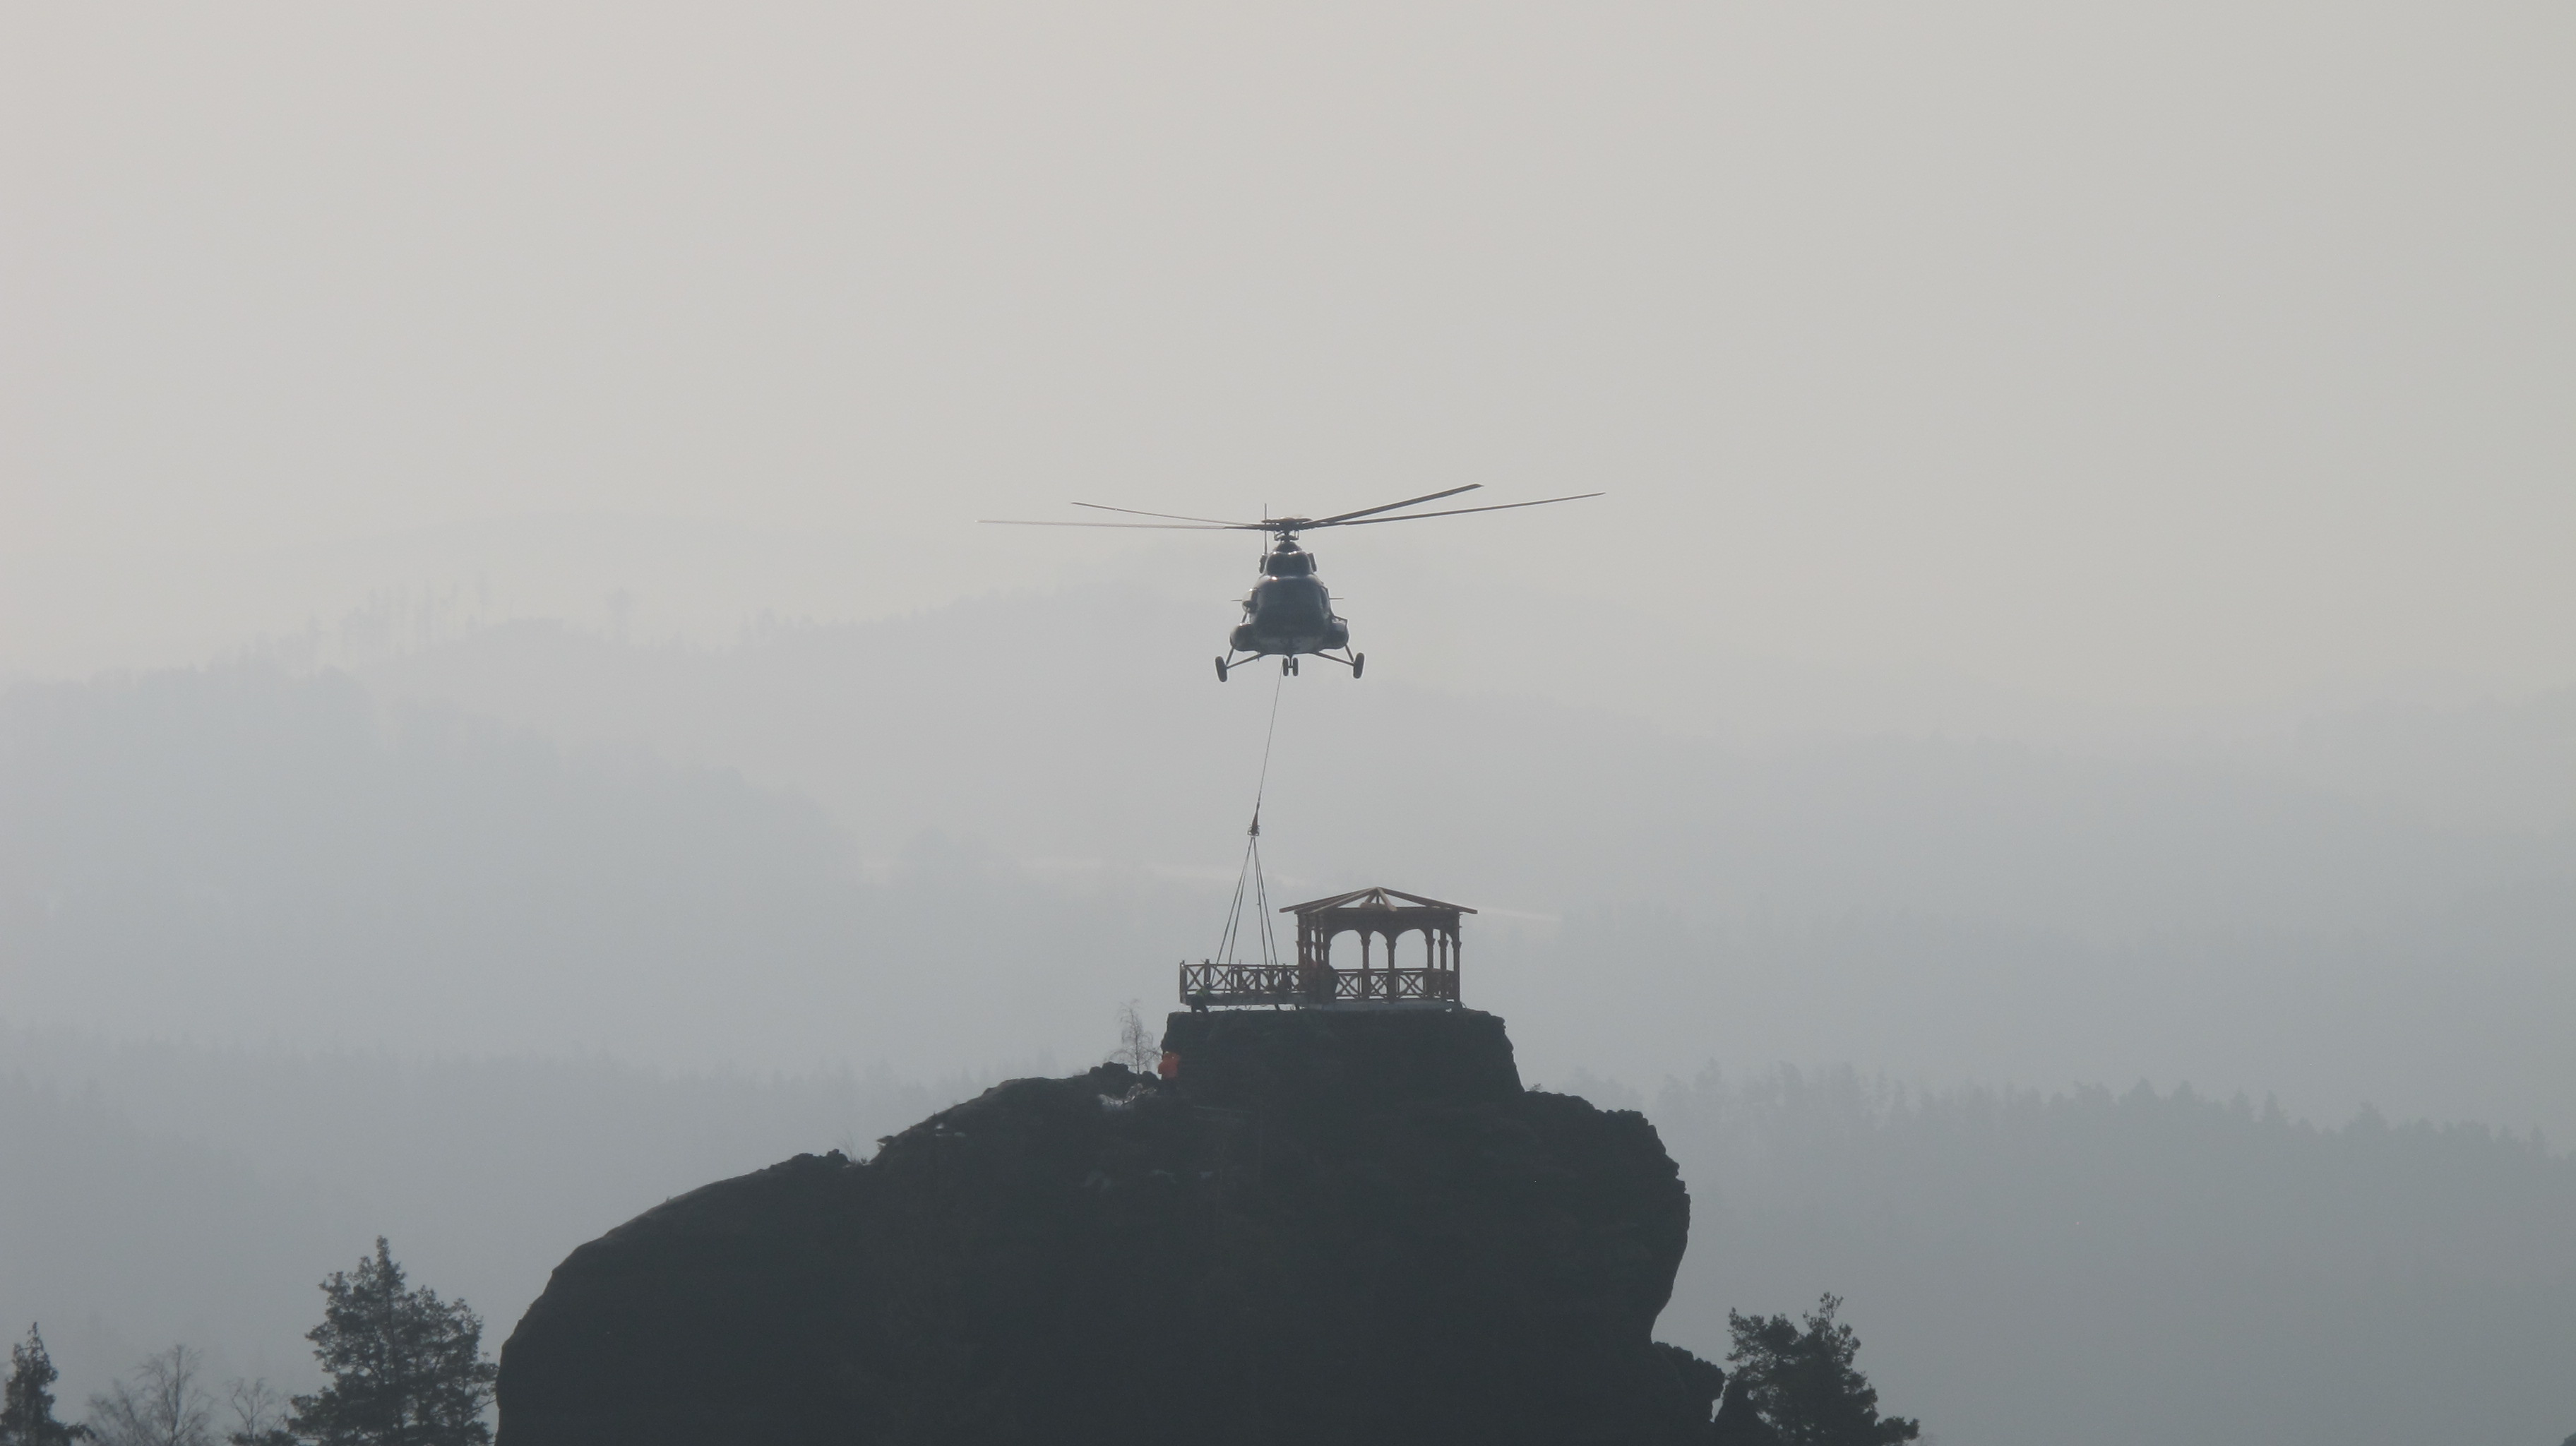 Vrtulník usazuje vyhlídkovou plošinu před altánem na Mariině vyhlídce